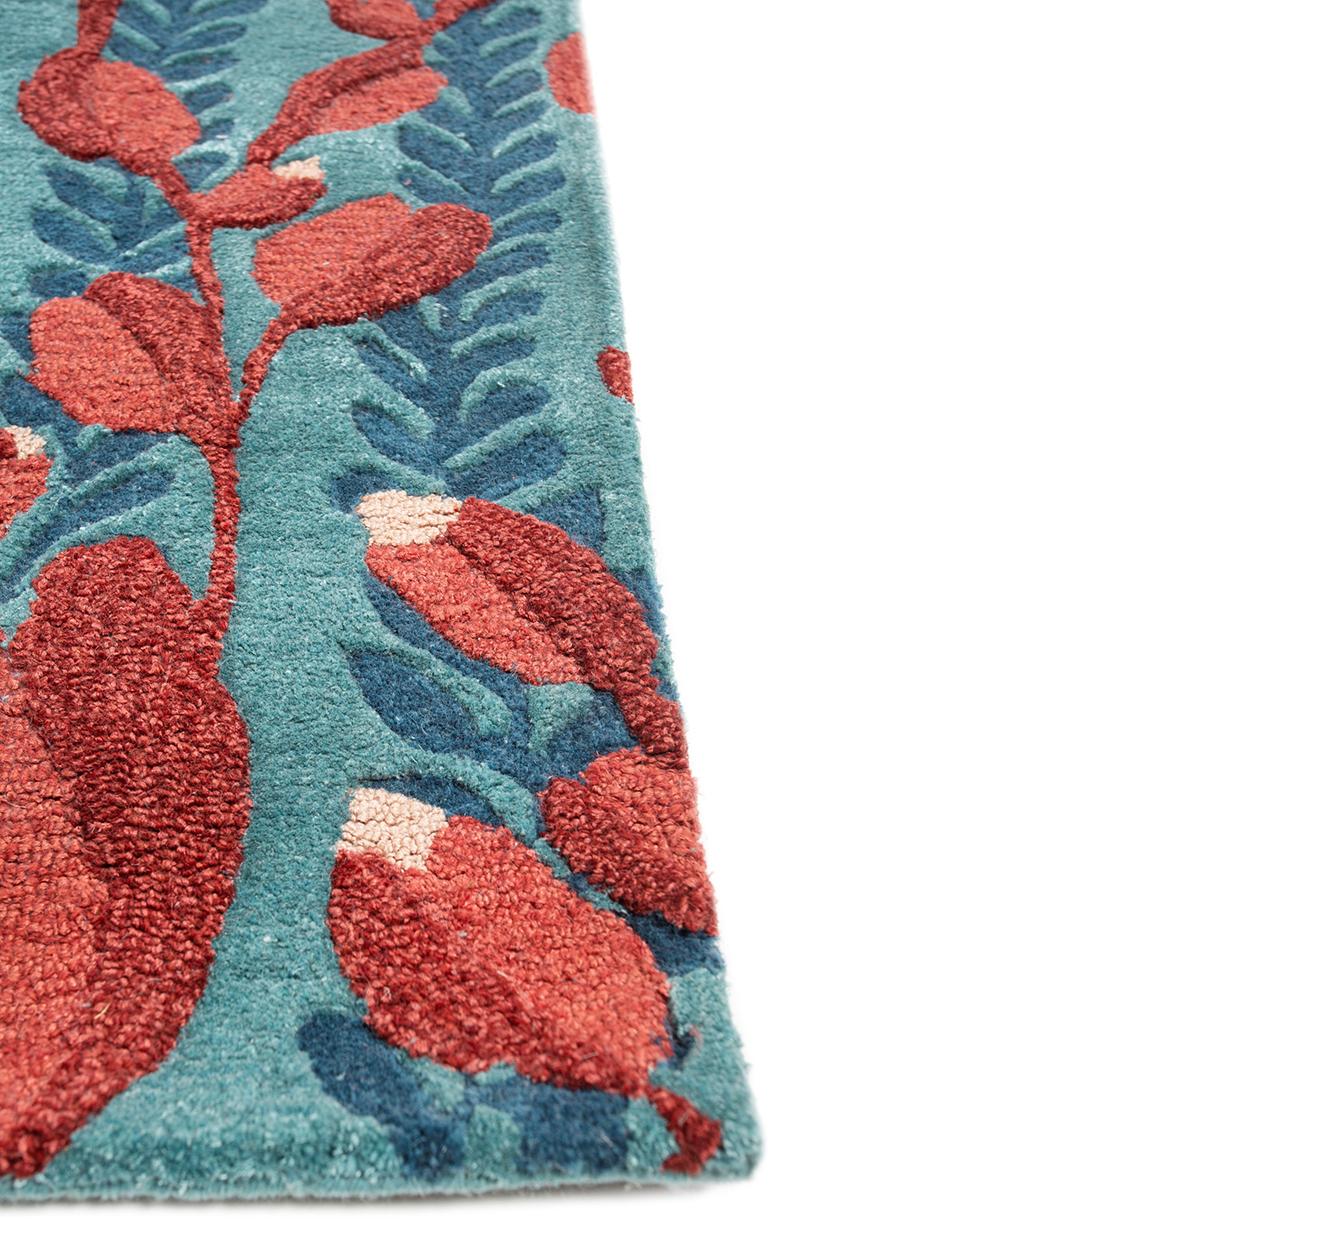 Entdecken Sie mit unseren handgetufteten Teppichen eine harmonische Mischung aus modernem Design und jahrhundertealter Kunstfertigkeit. Jedes Stück ist eine Leinwand, auf der moderne Muster auf die Seele traditioneller Handtufting-Techniken treffen.